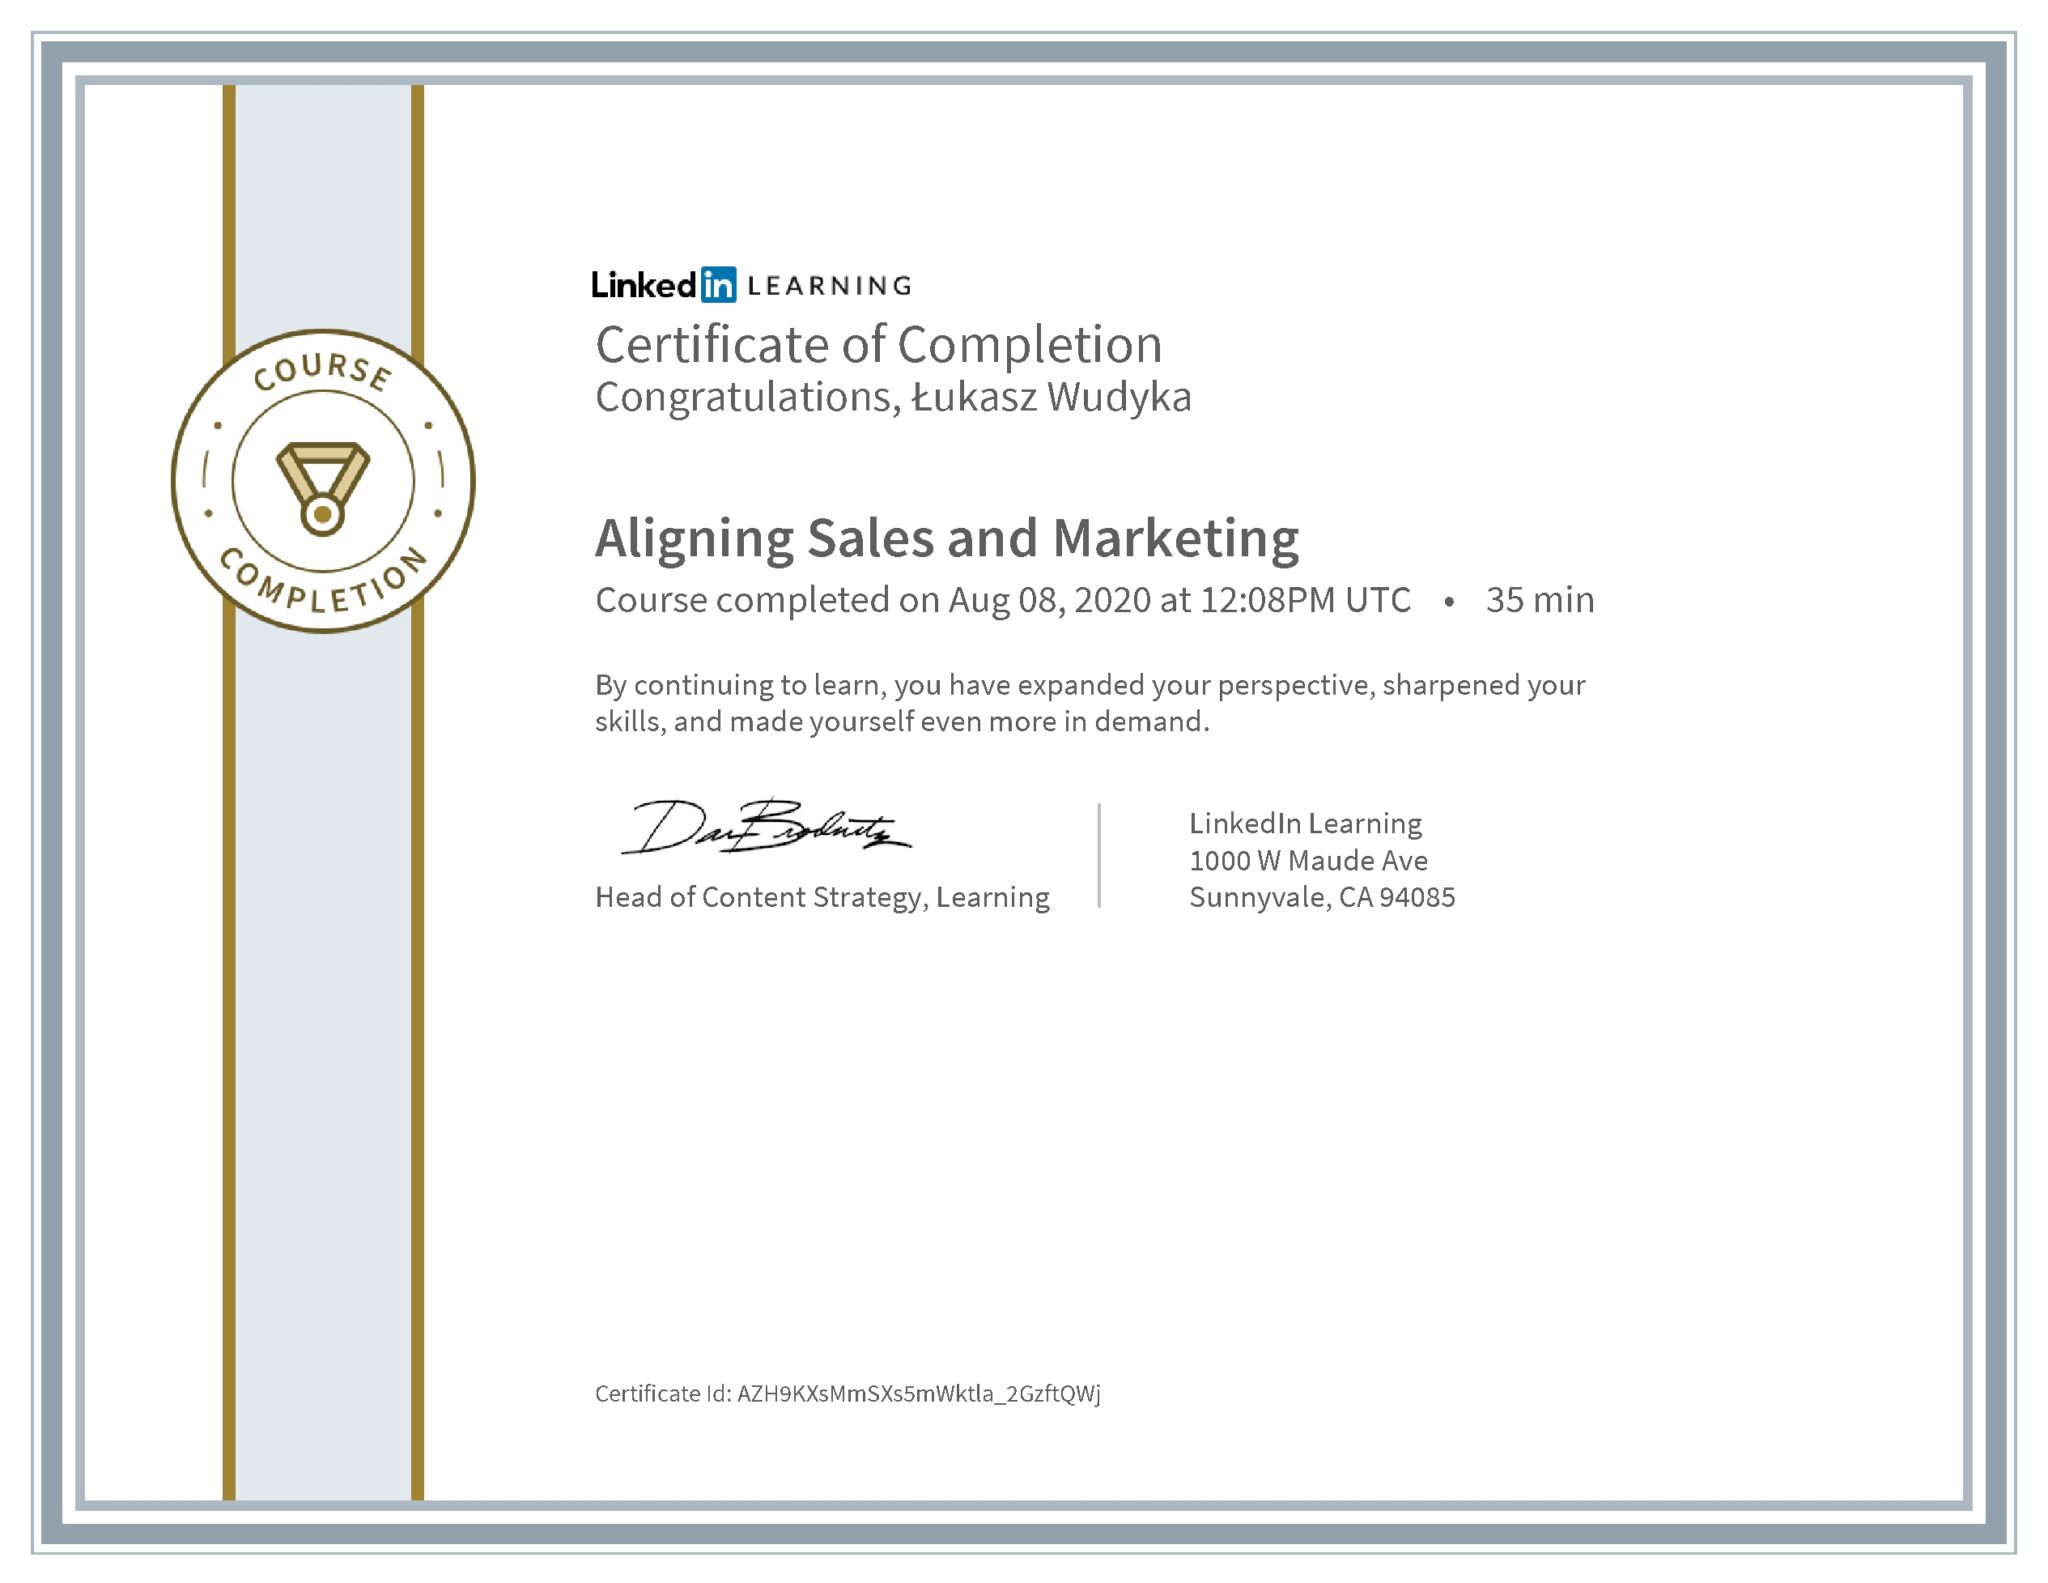 Łukasz Wudyka certyfikat LinkedIn Aligning Sales and Marketing